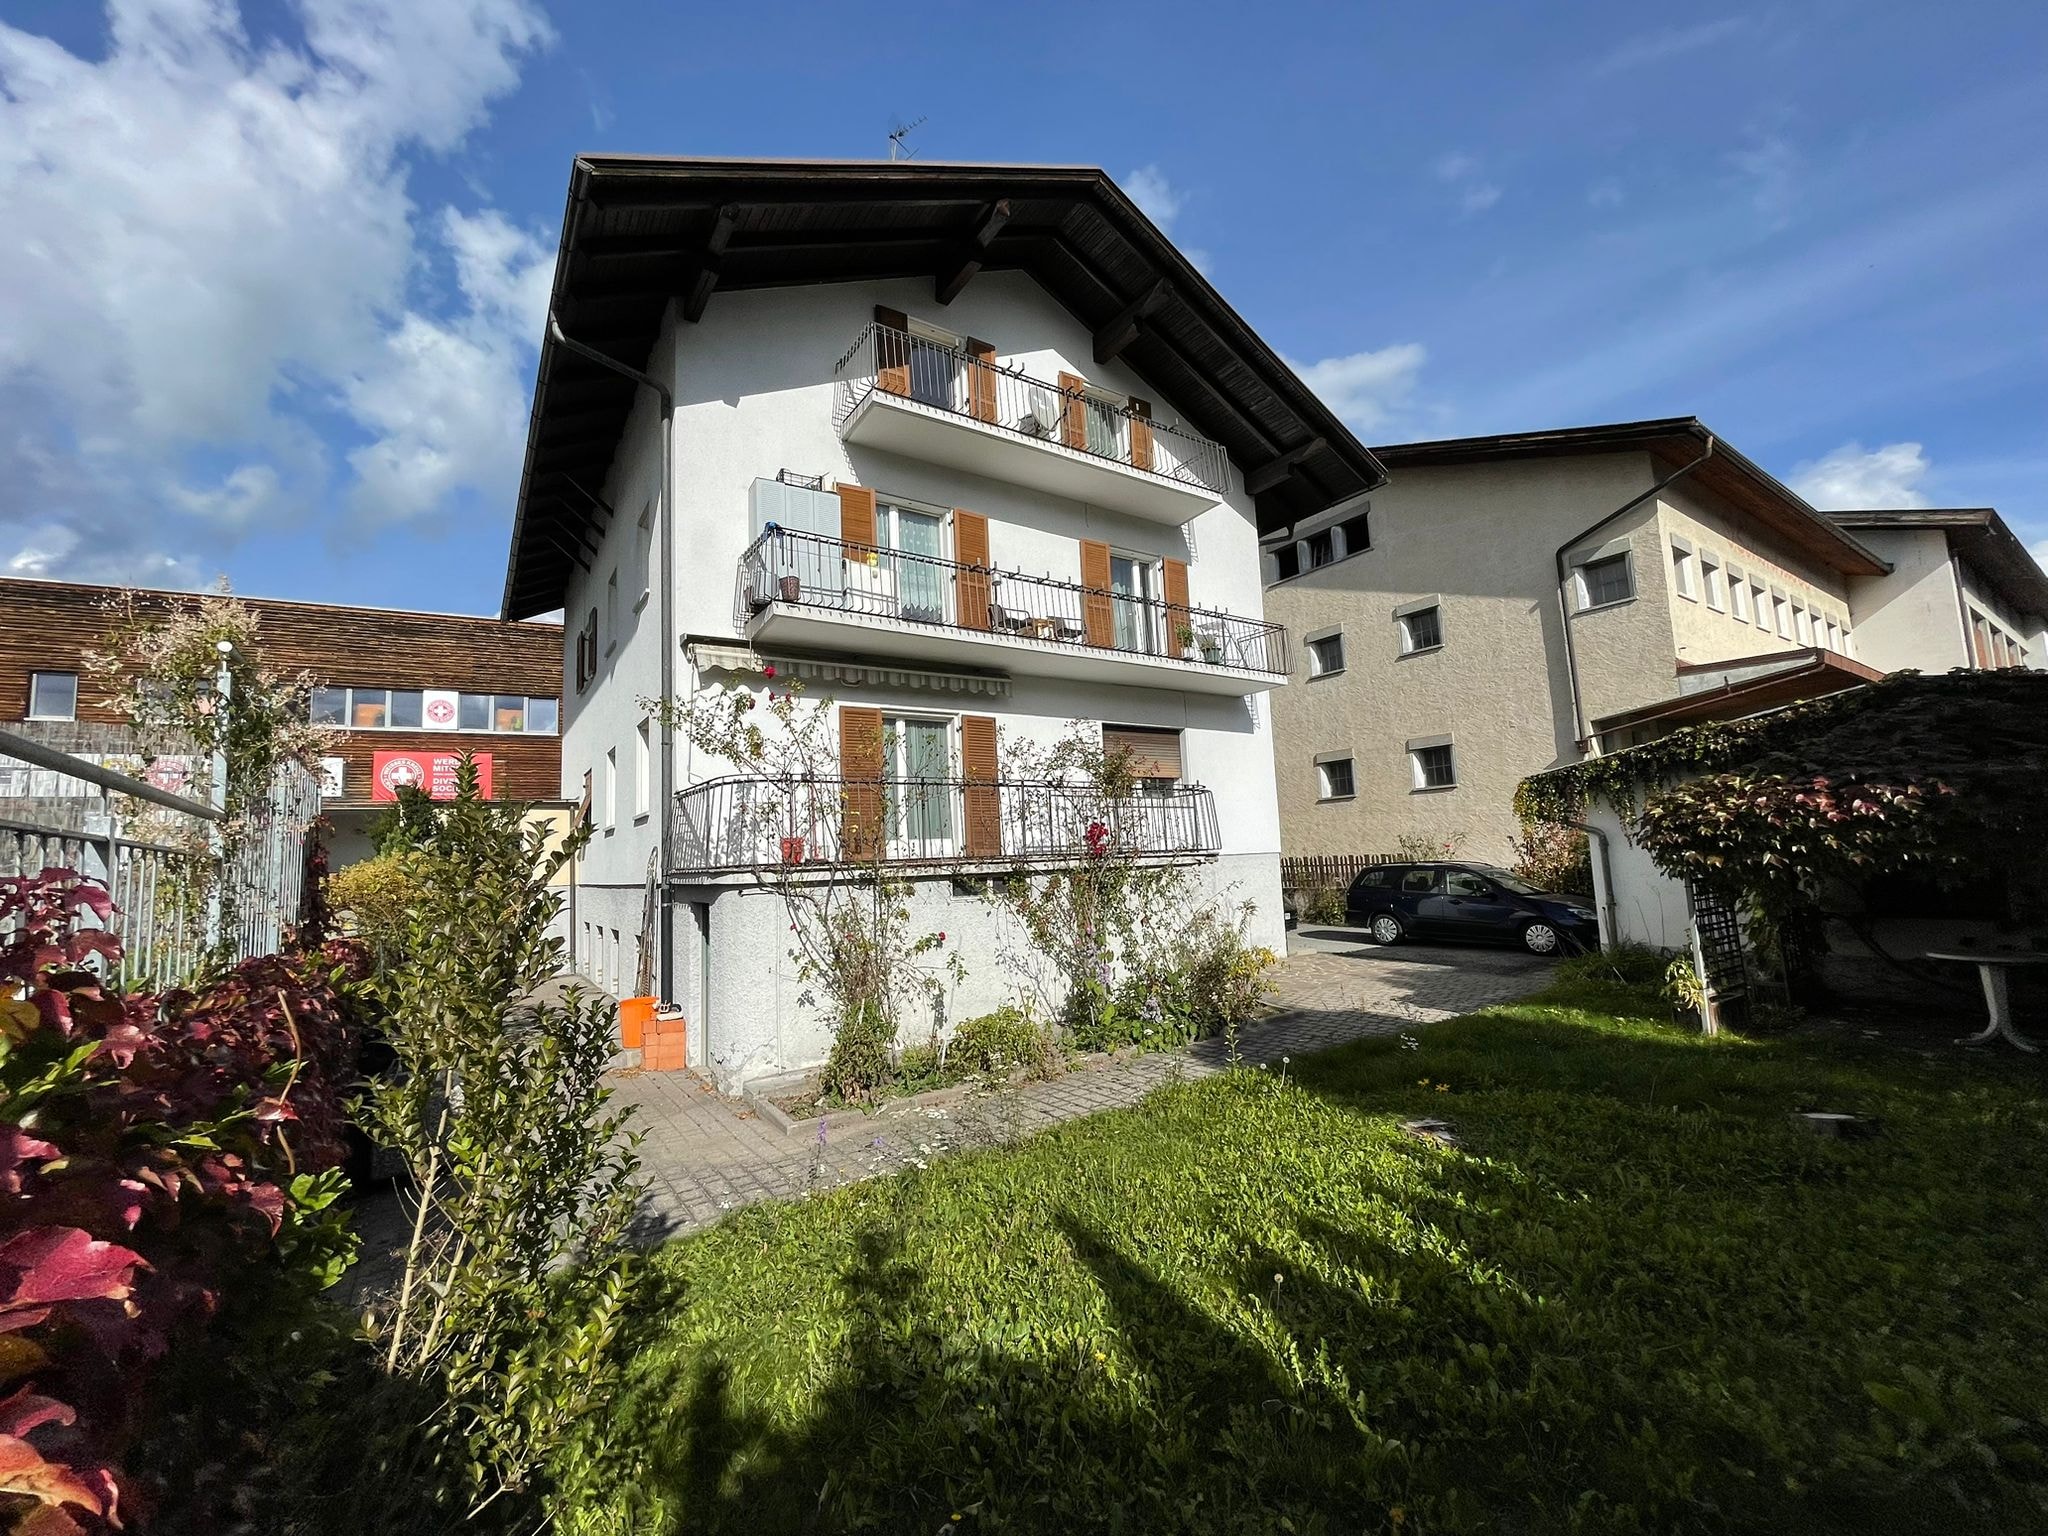 Villa in vendita a Brunico, 10 locali, Trattative riservate | CambioCasa.it